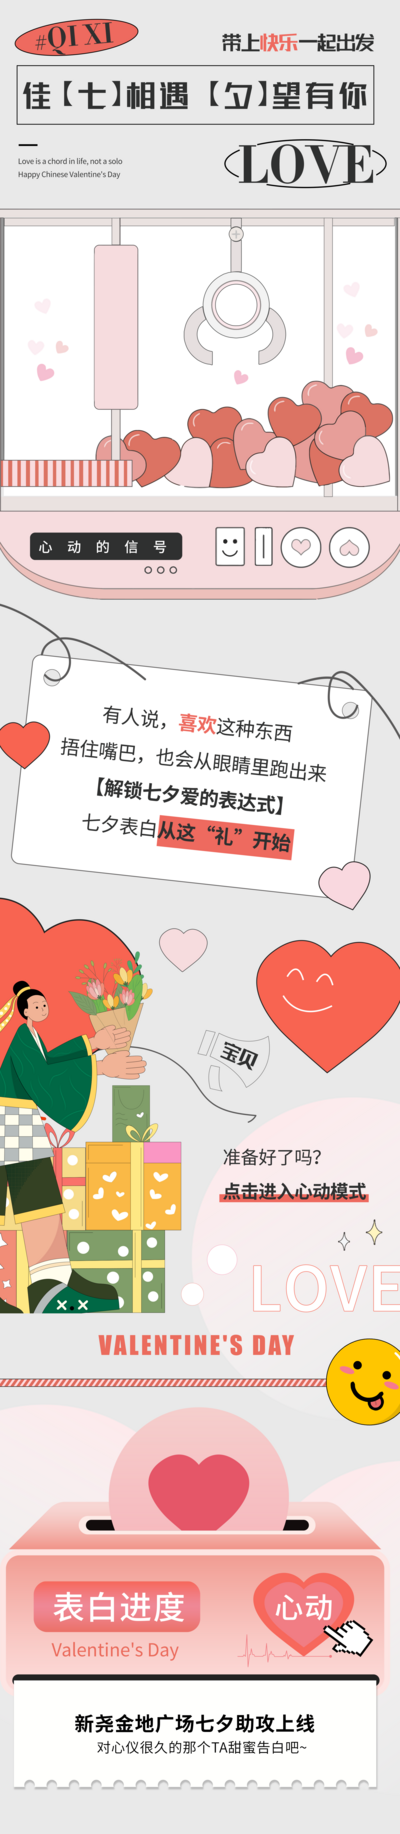 南门网 海报 长图 商超 中国传统节日 七夕 情人节 插画 扁平化